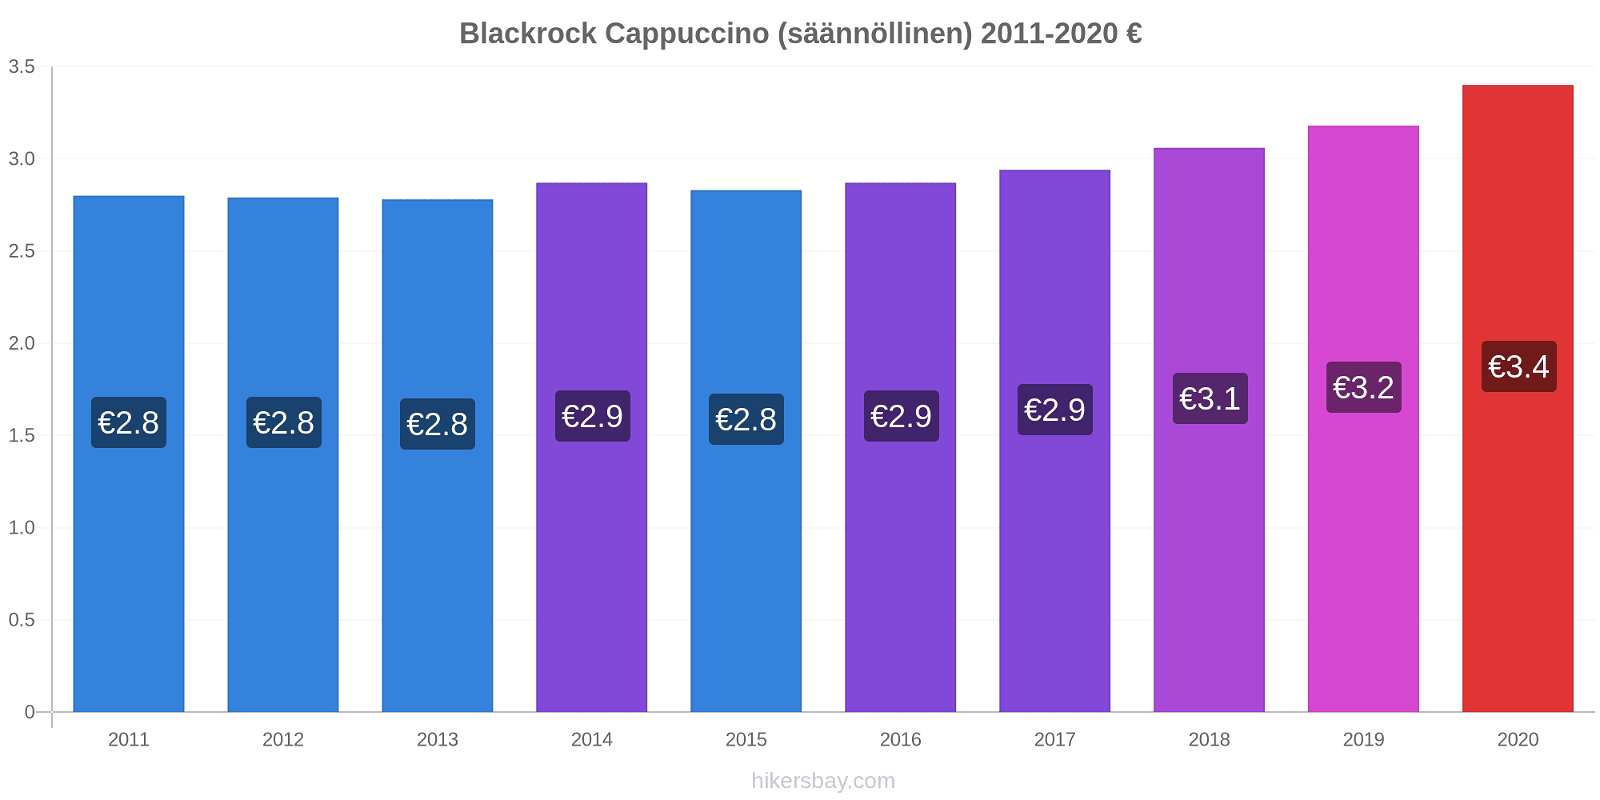 Blackrock hintojen muutokset Cappuccino (säännöllinen) hikersbay.com